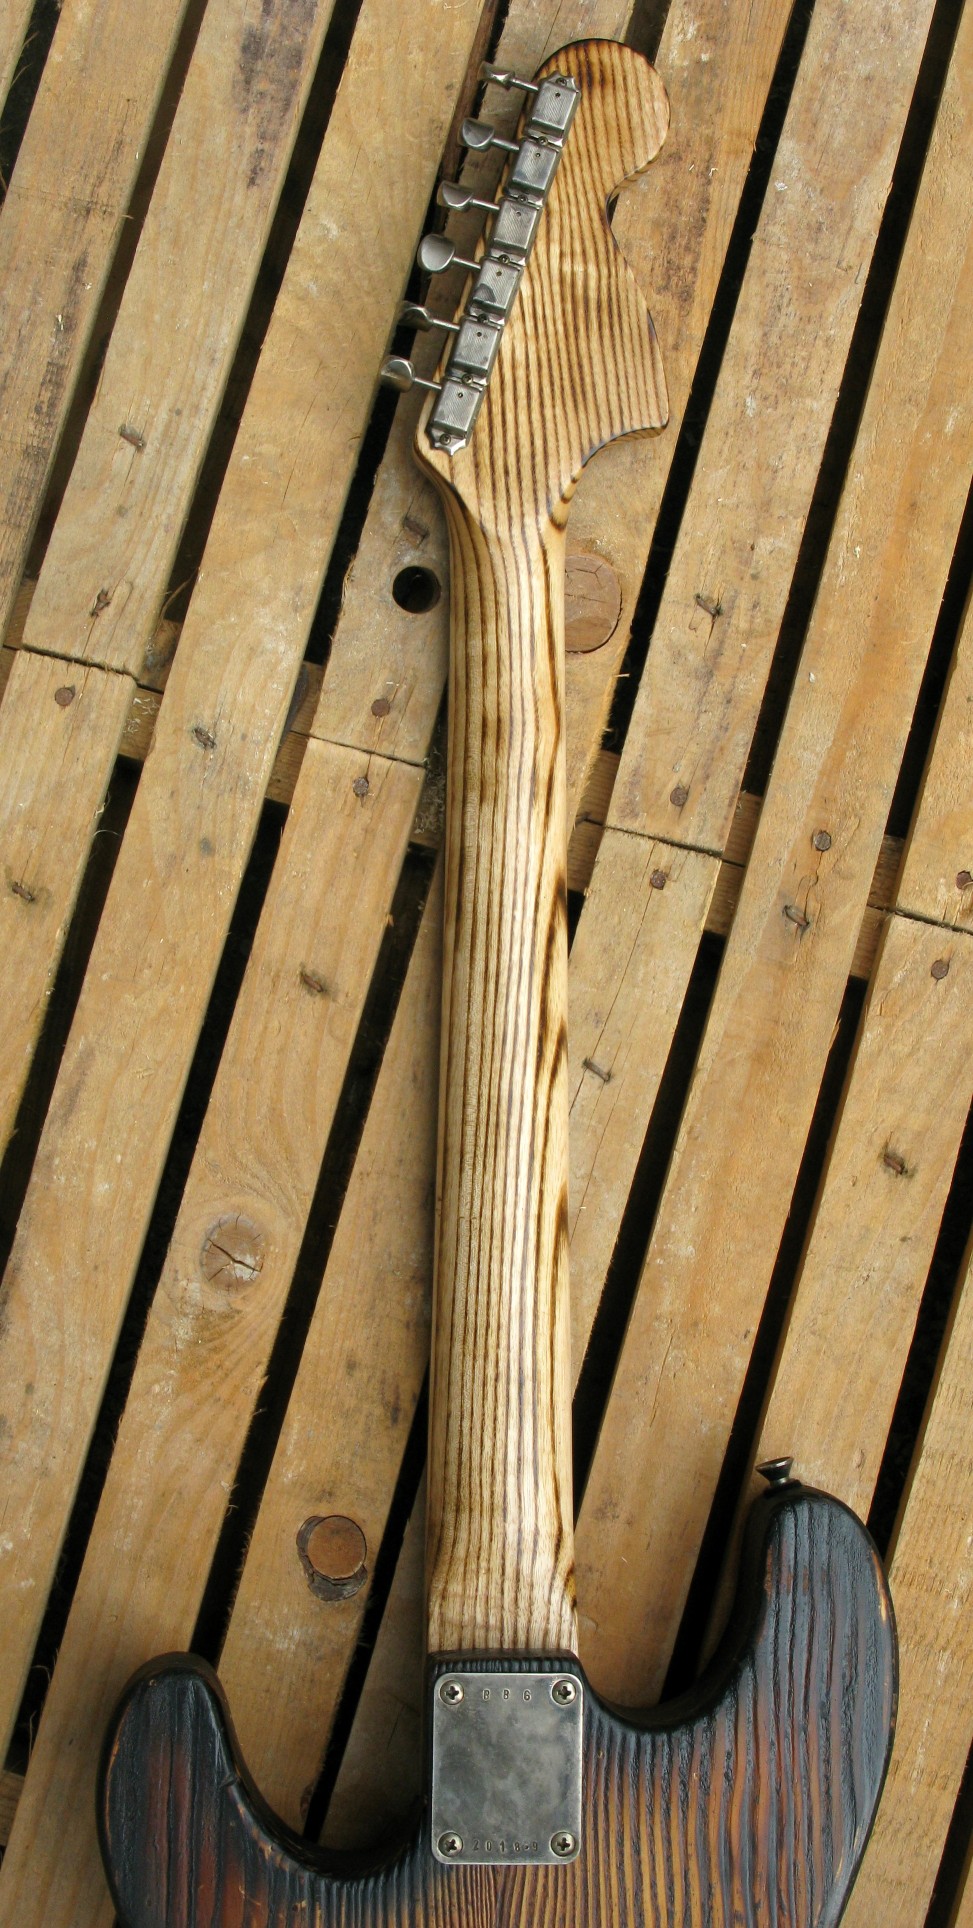 Chitarra modello Stratocaster, body in pino, manico in frassino, reverse: manico